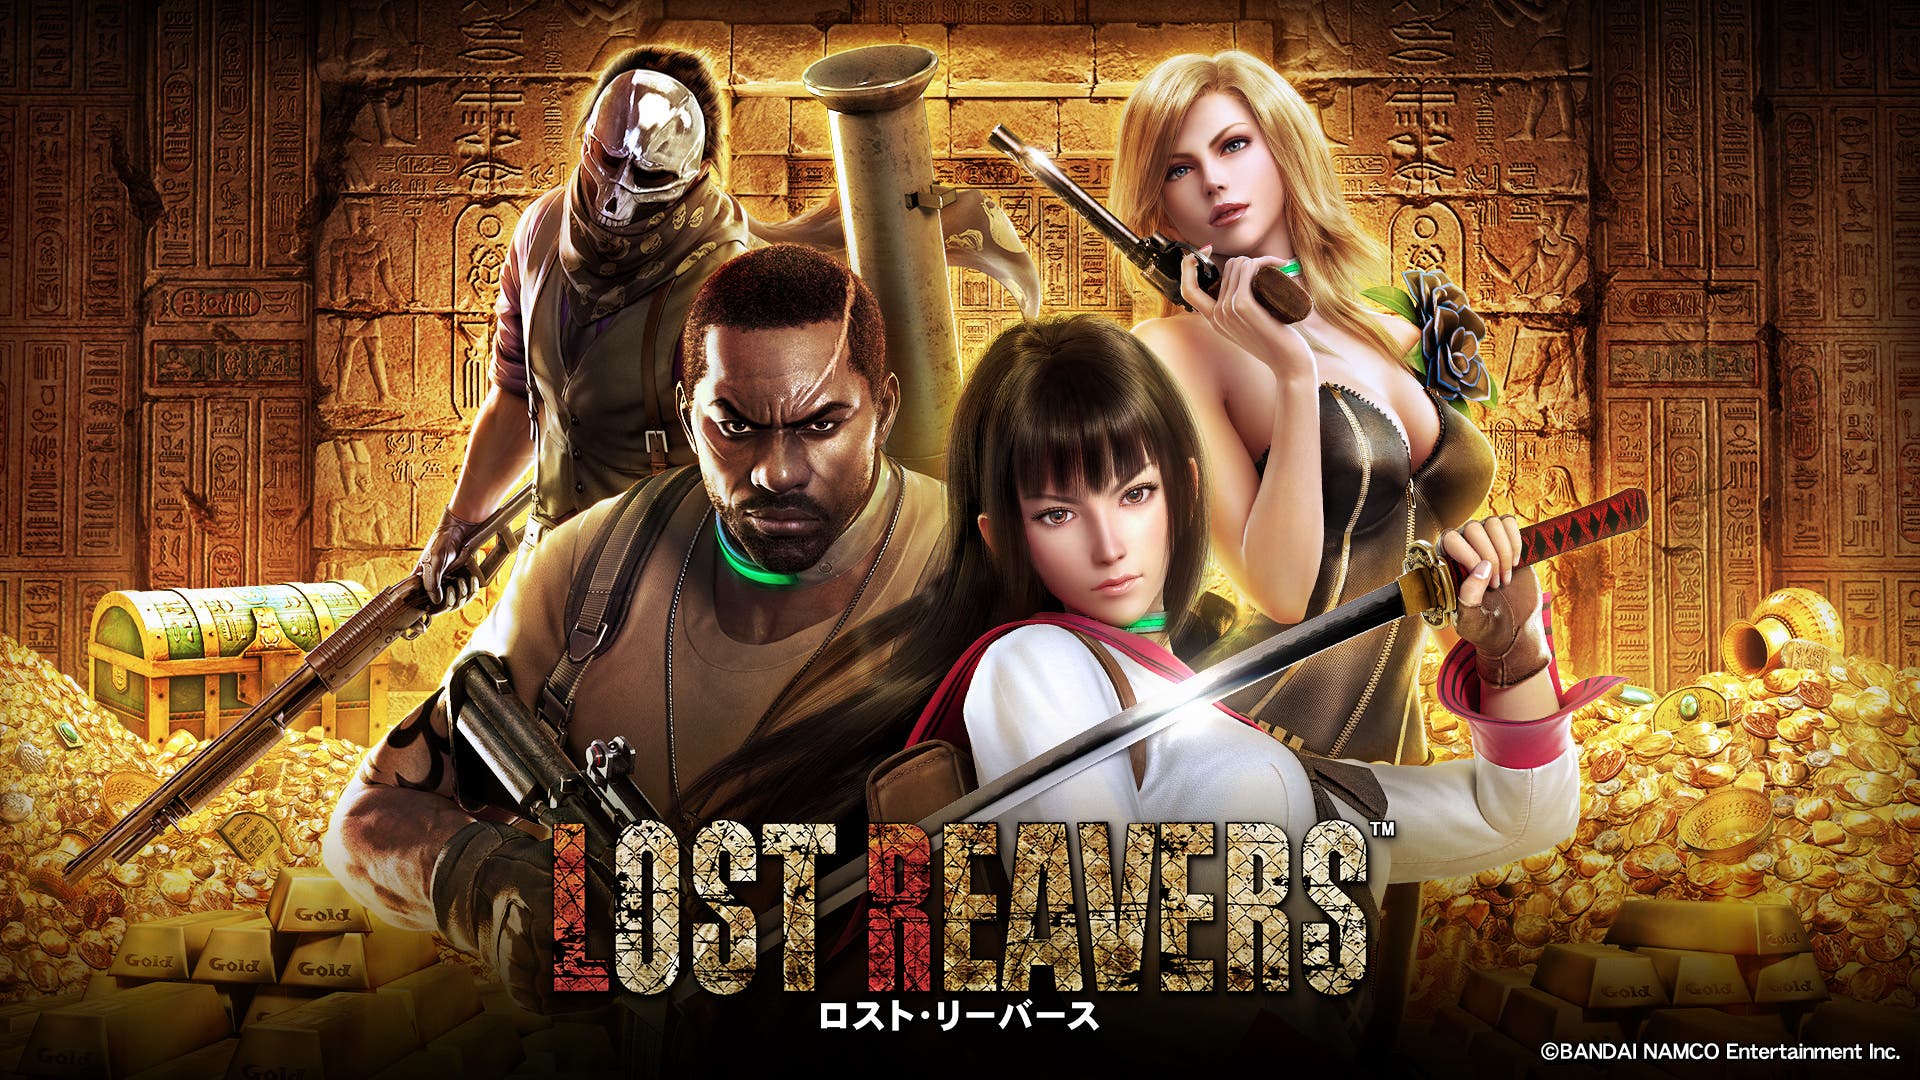 Sale a la luz un gameplay de la versión 2.0.0 de ‘Lost Reavers’